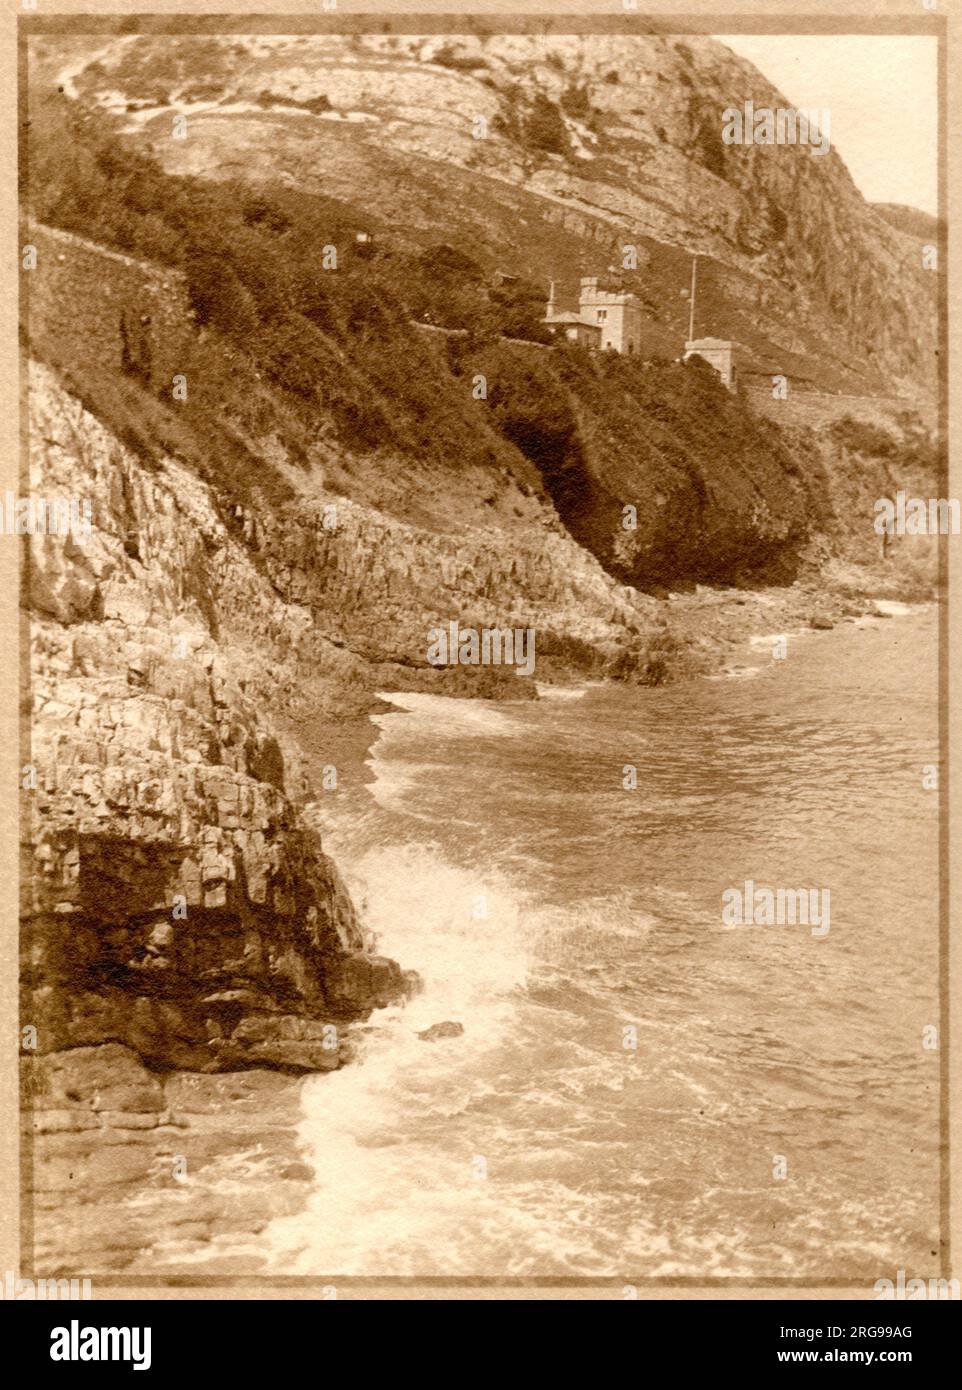 Meerblick, Llandudno, Nordwales, mit Tollgate House (West Shore Lodge Gate) auf dem Marine Drive, das oben sichtbar ist. Stockfoto